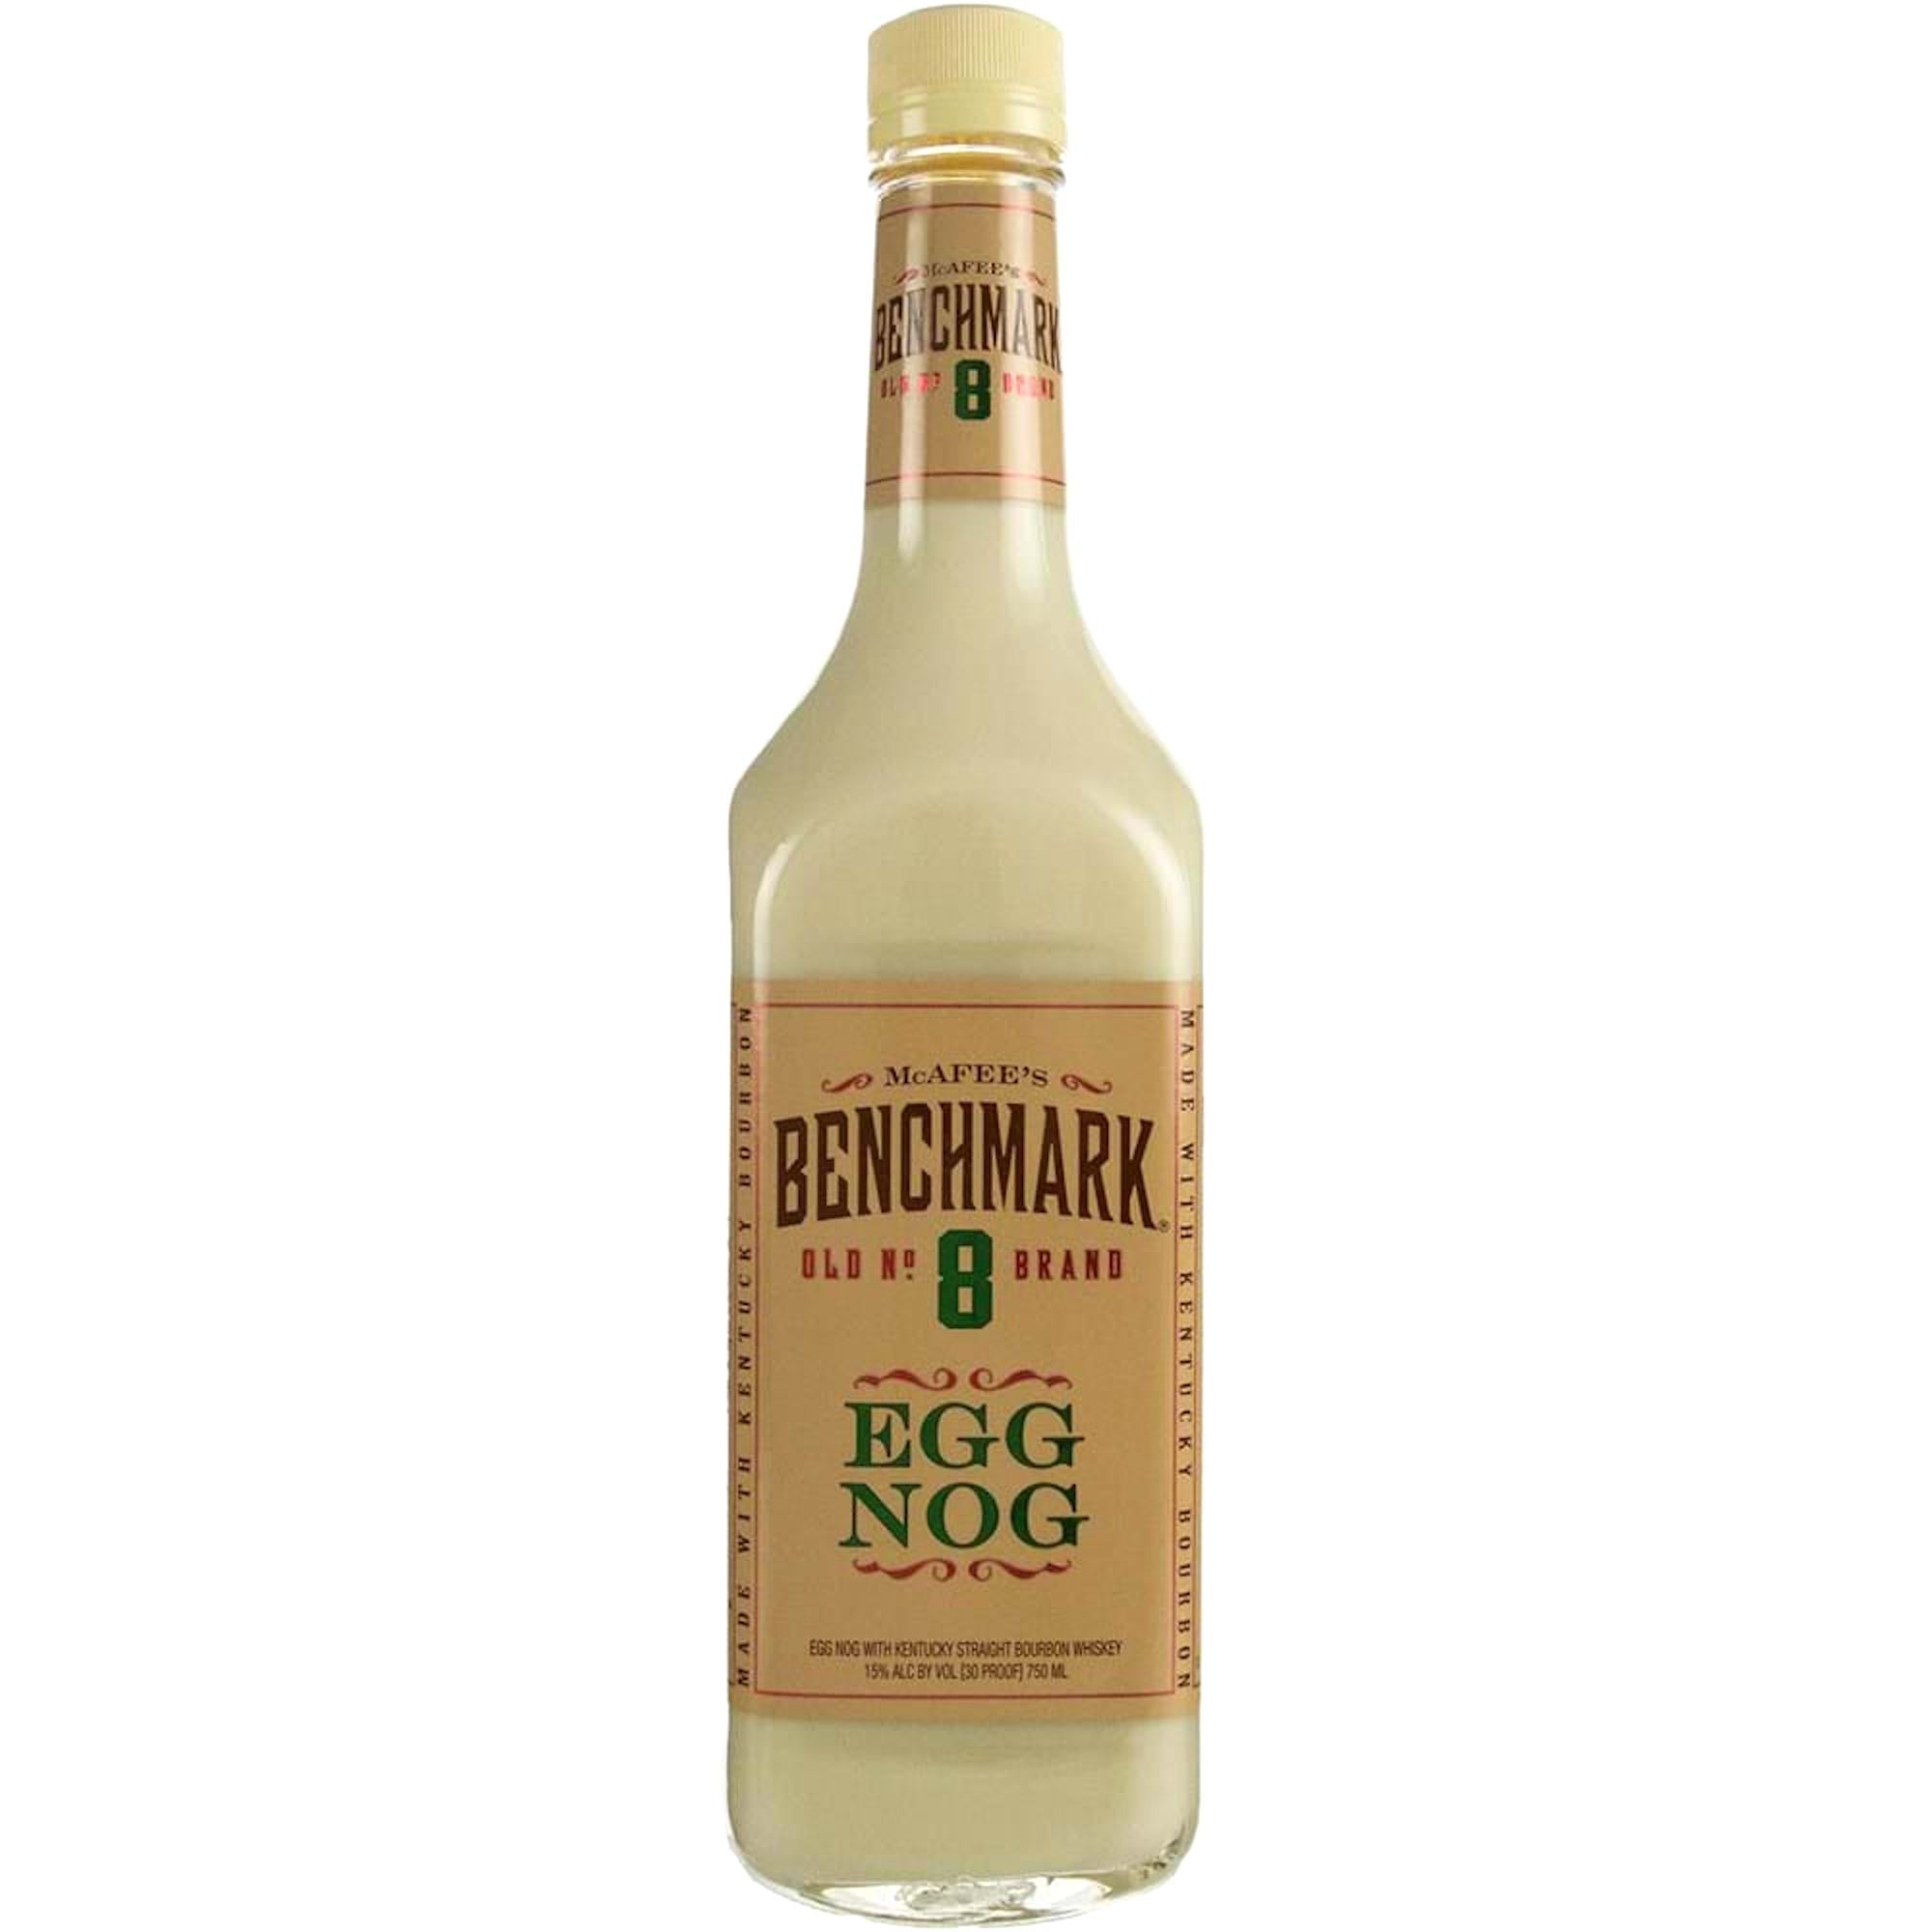 Benchmark Egg Nog Bourbon